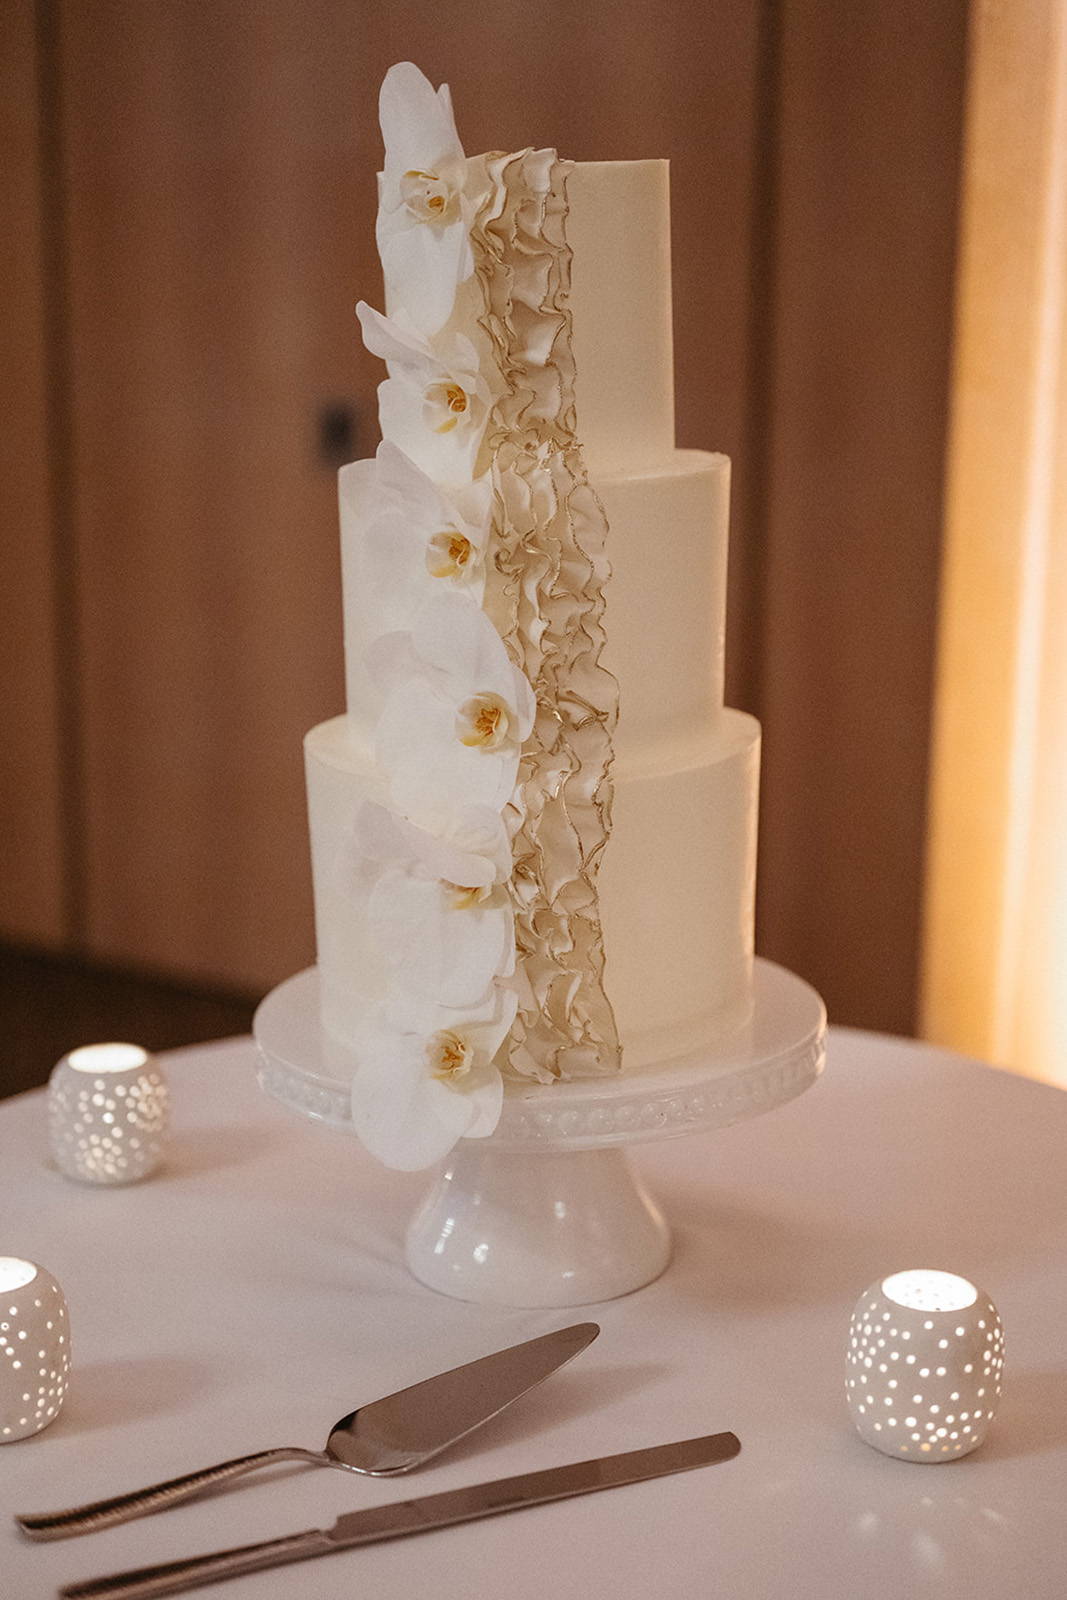 Three-tier wedding cake